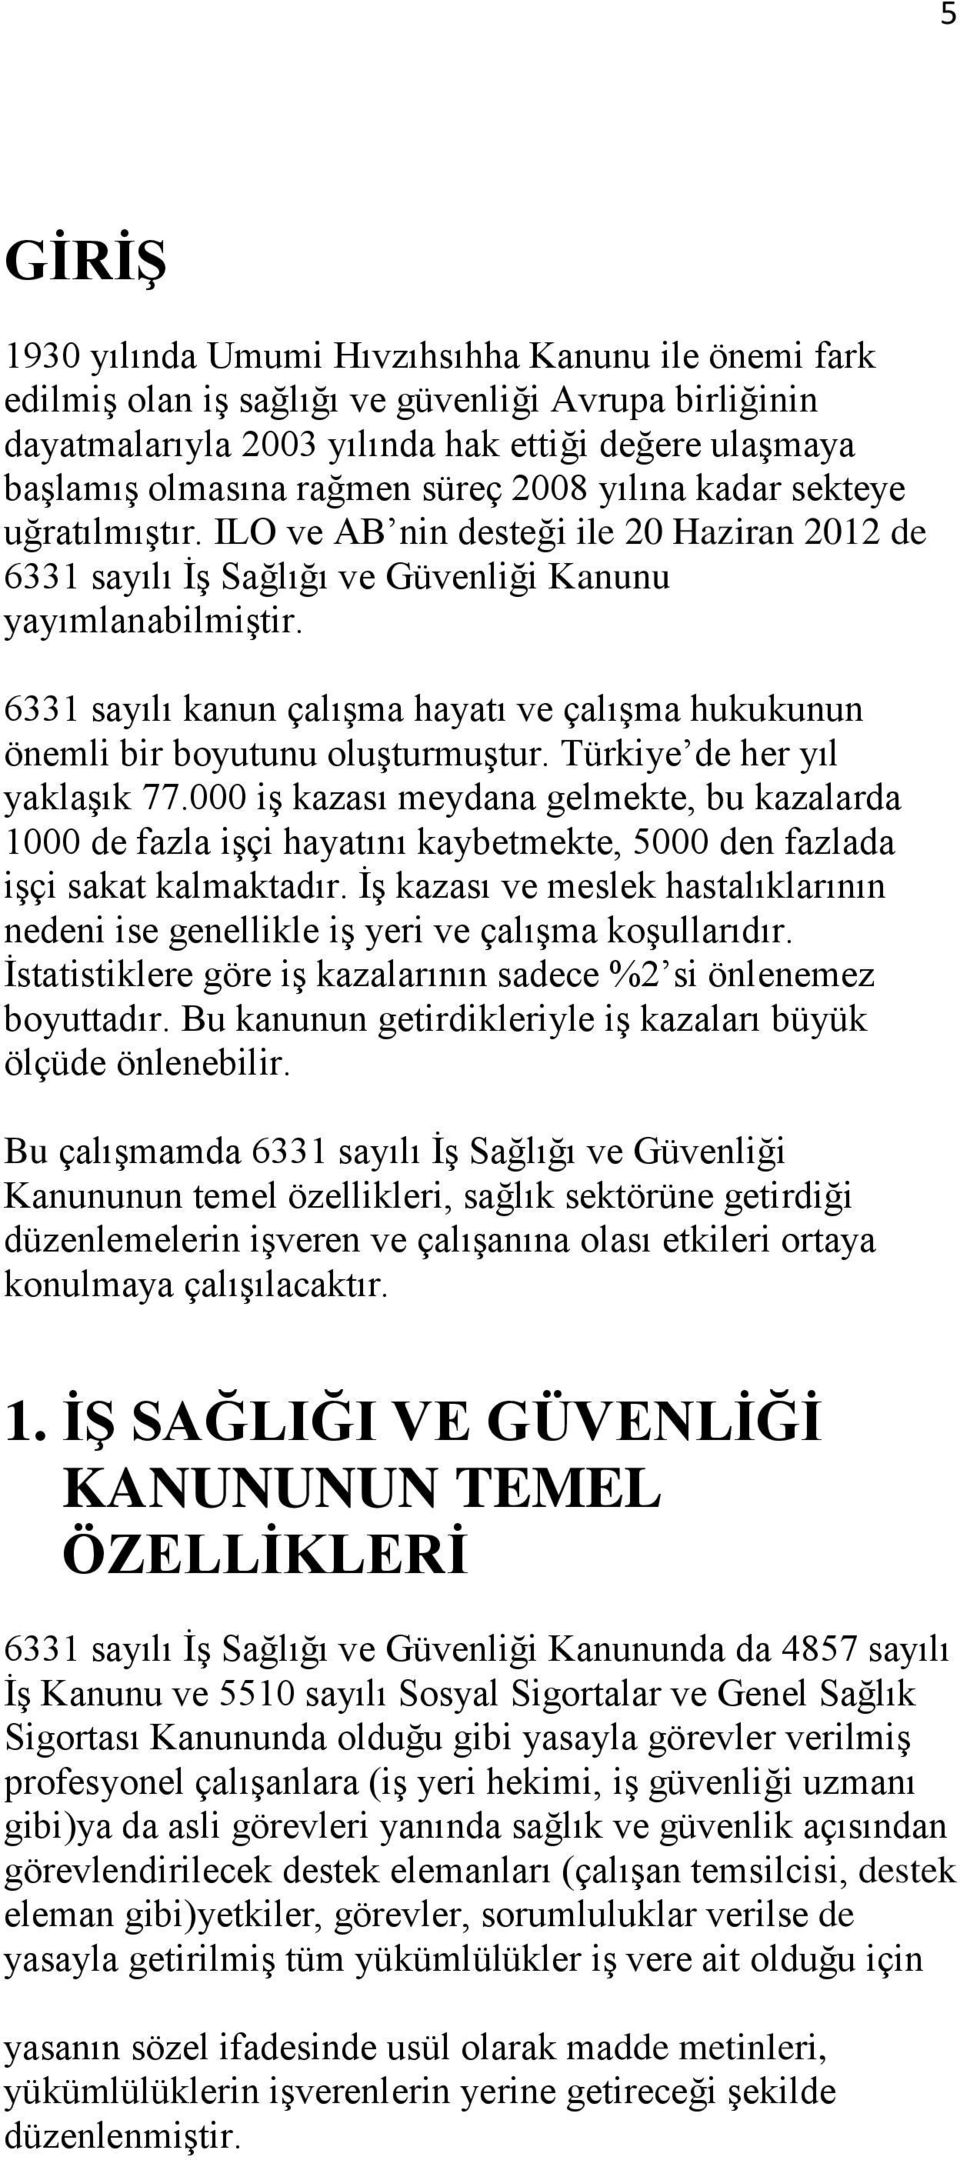 6331 sayılı kanun çalışma hayatı ve çalışma hukukunun önemli bir boyutunu oluşturmuştur. Türkiye de her yıl yaklaşık 77.